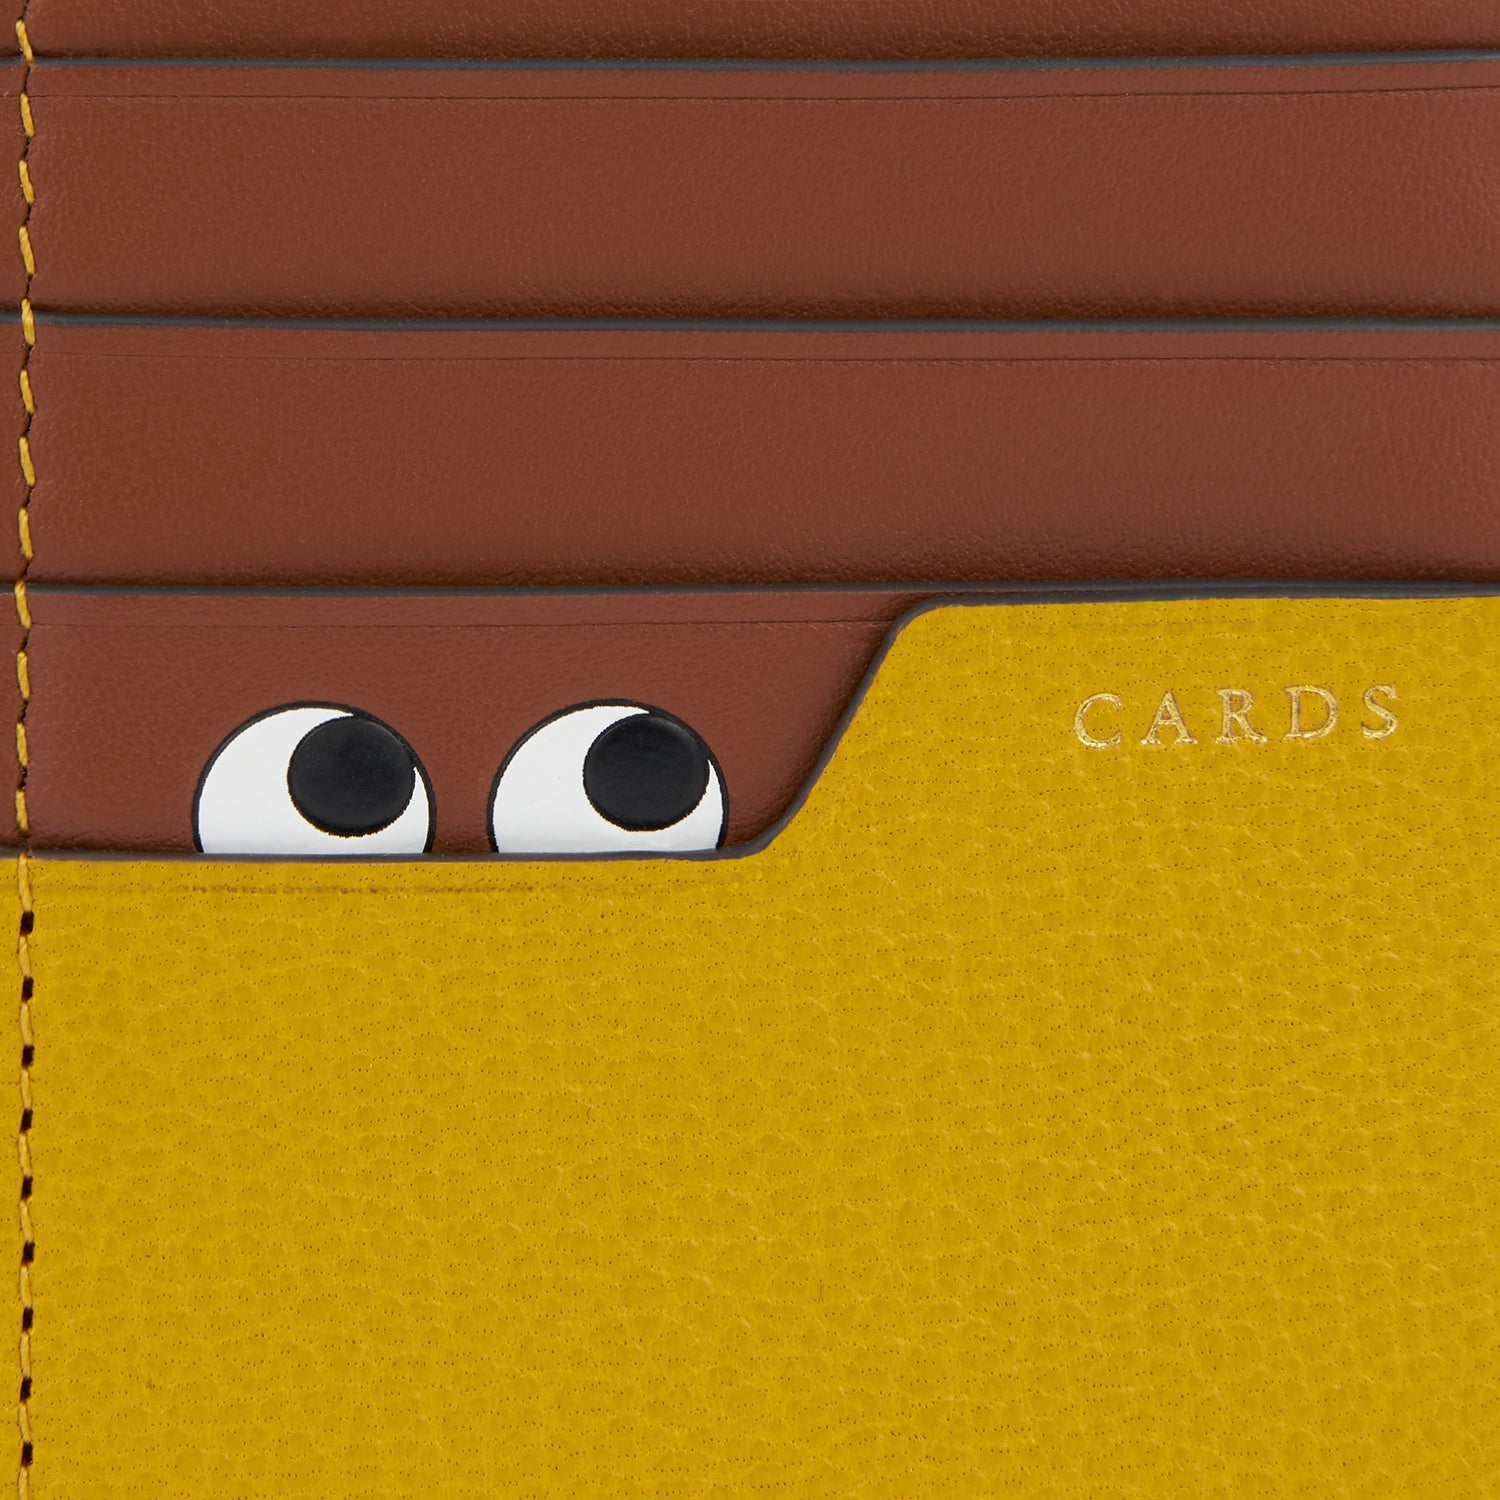 Peeping Eyes Zip Card Case -

                  
                    Capra Leather in Mustard -
                  

                  Anya Hindmarch US
